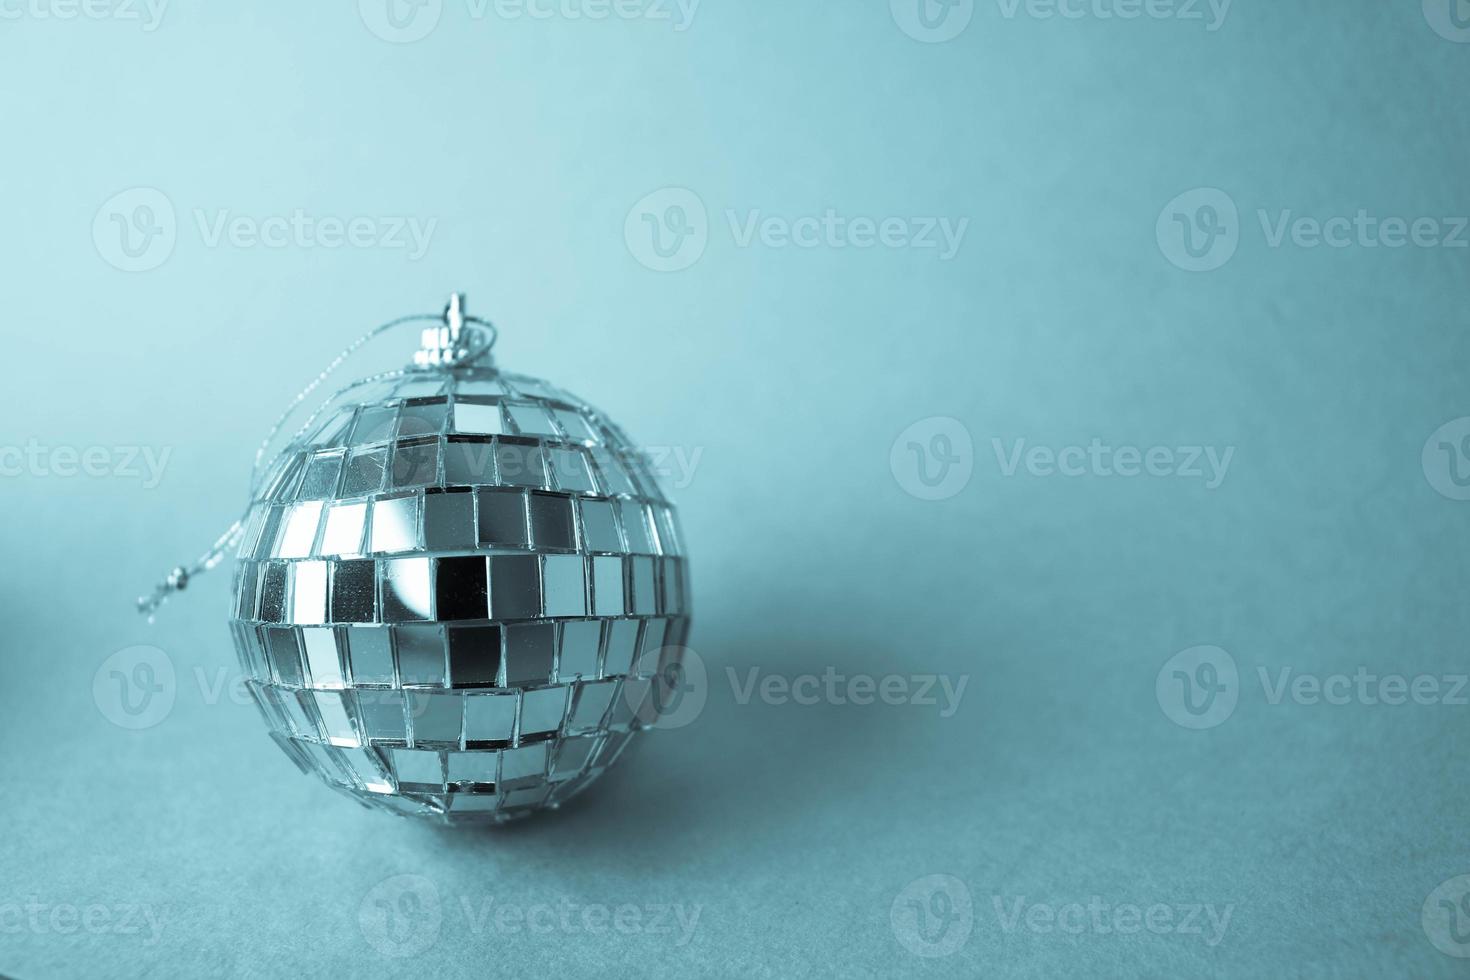 silber spiegel musical club discokugel klein rund glas winter glänzend dekorativ schön weihnachten festlich weihnachtskugel, weihnachtsspielzeug verputzt funkelt auf blauem hintergrund foto